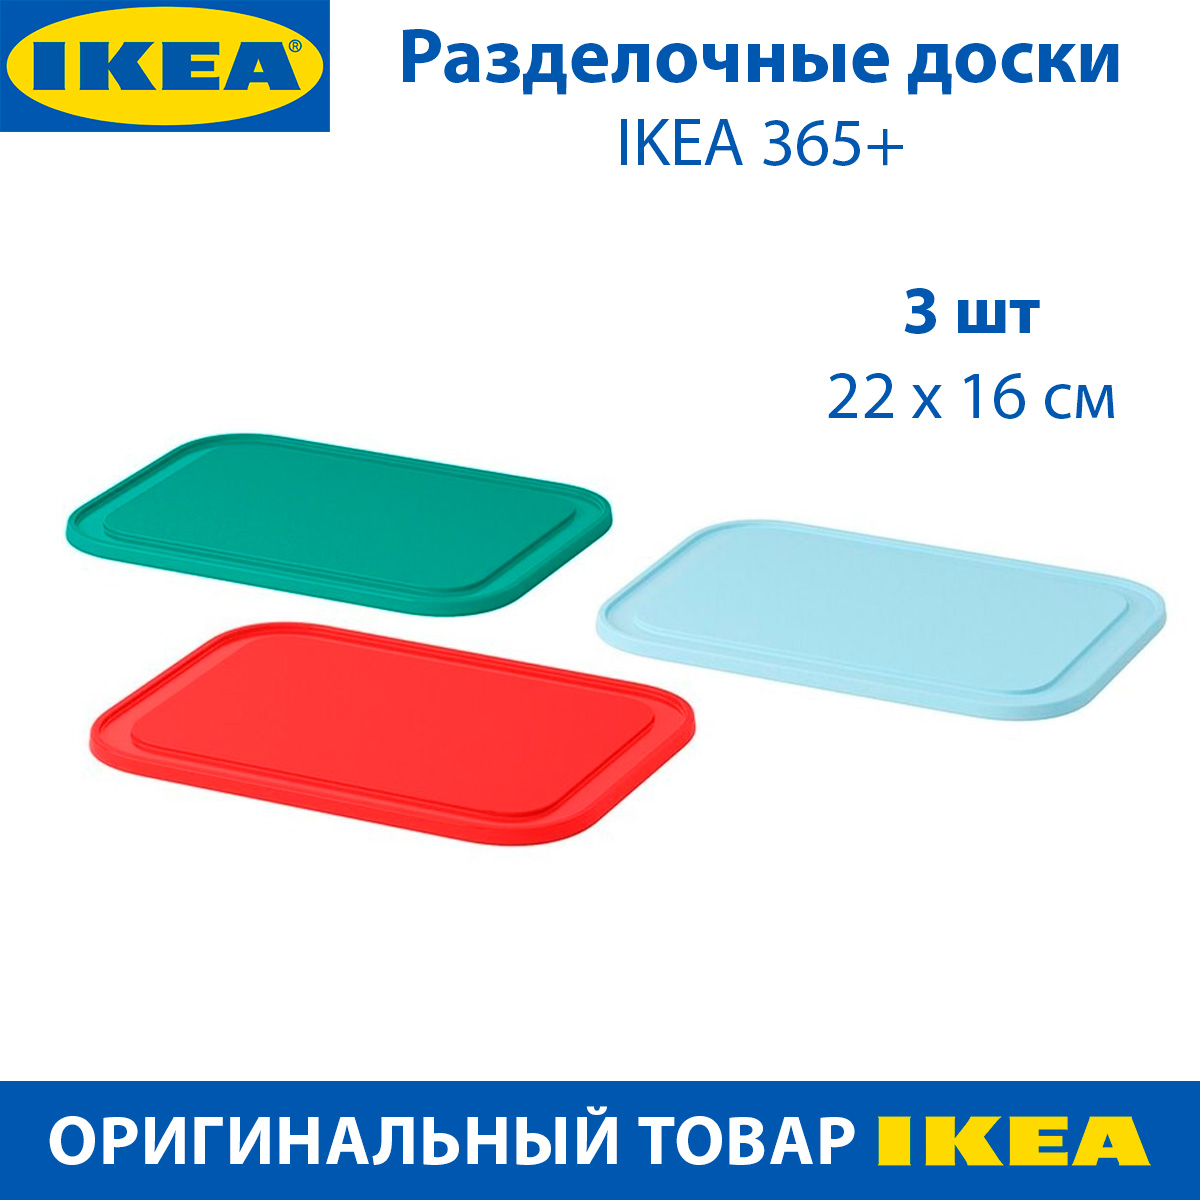 Разделочные доски IKEA 365+, 22х16 см, пластиковые, три цвета, 3 шт в наборе